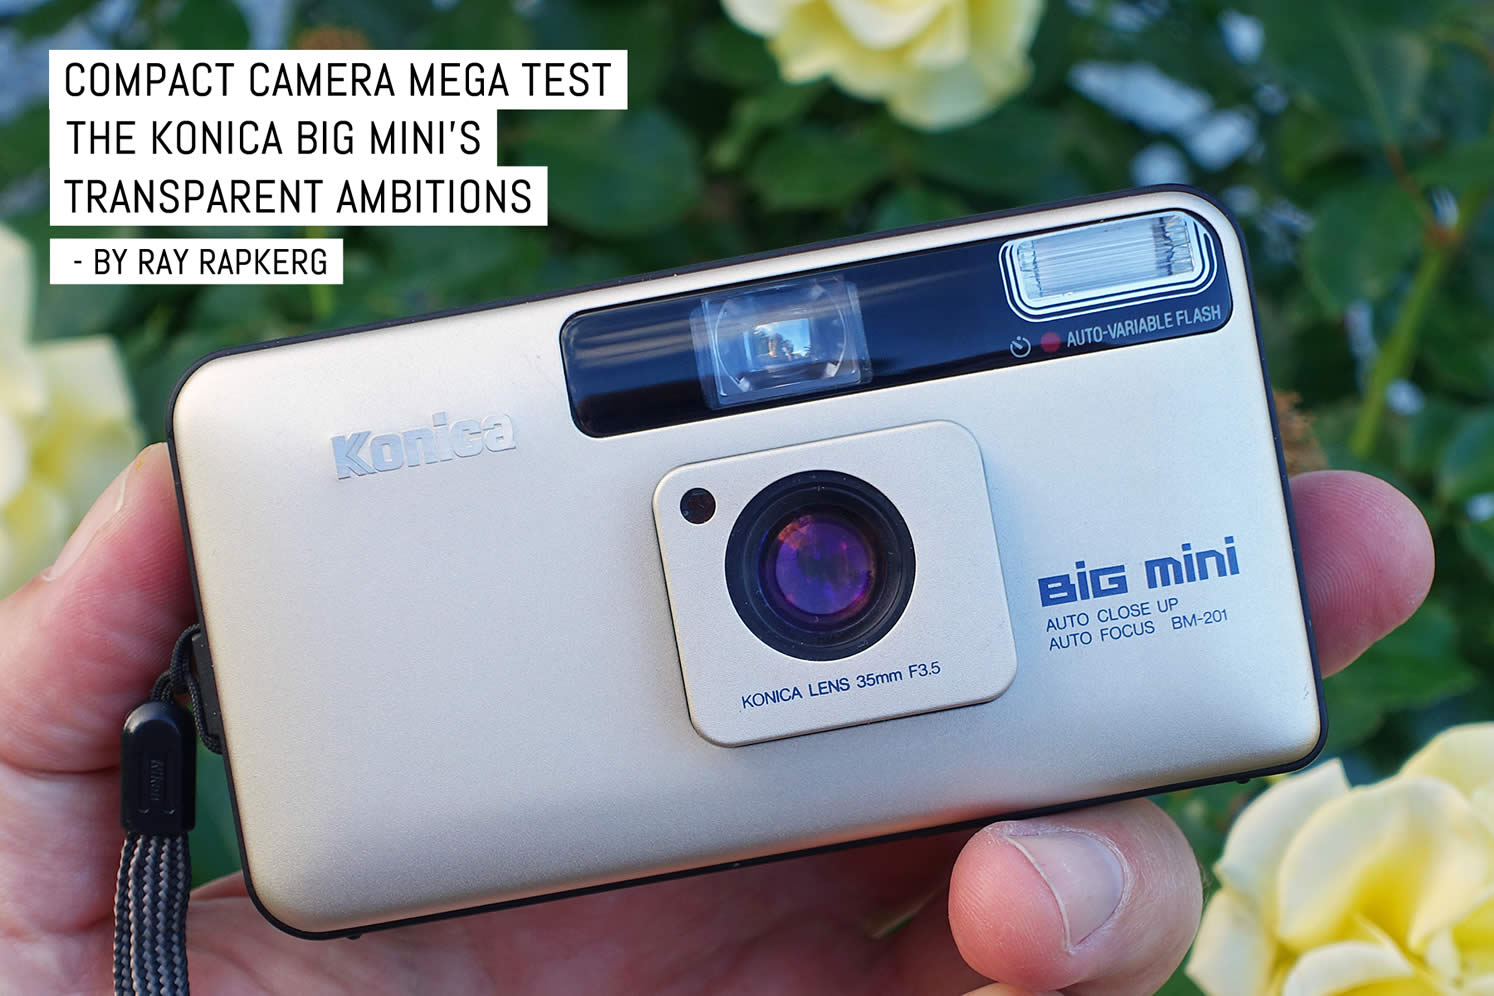 Compact camera mega test: The Konica Big Mini’s transparent ambitions